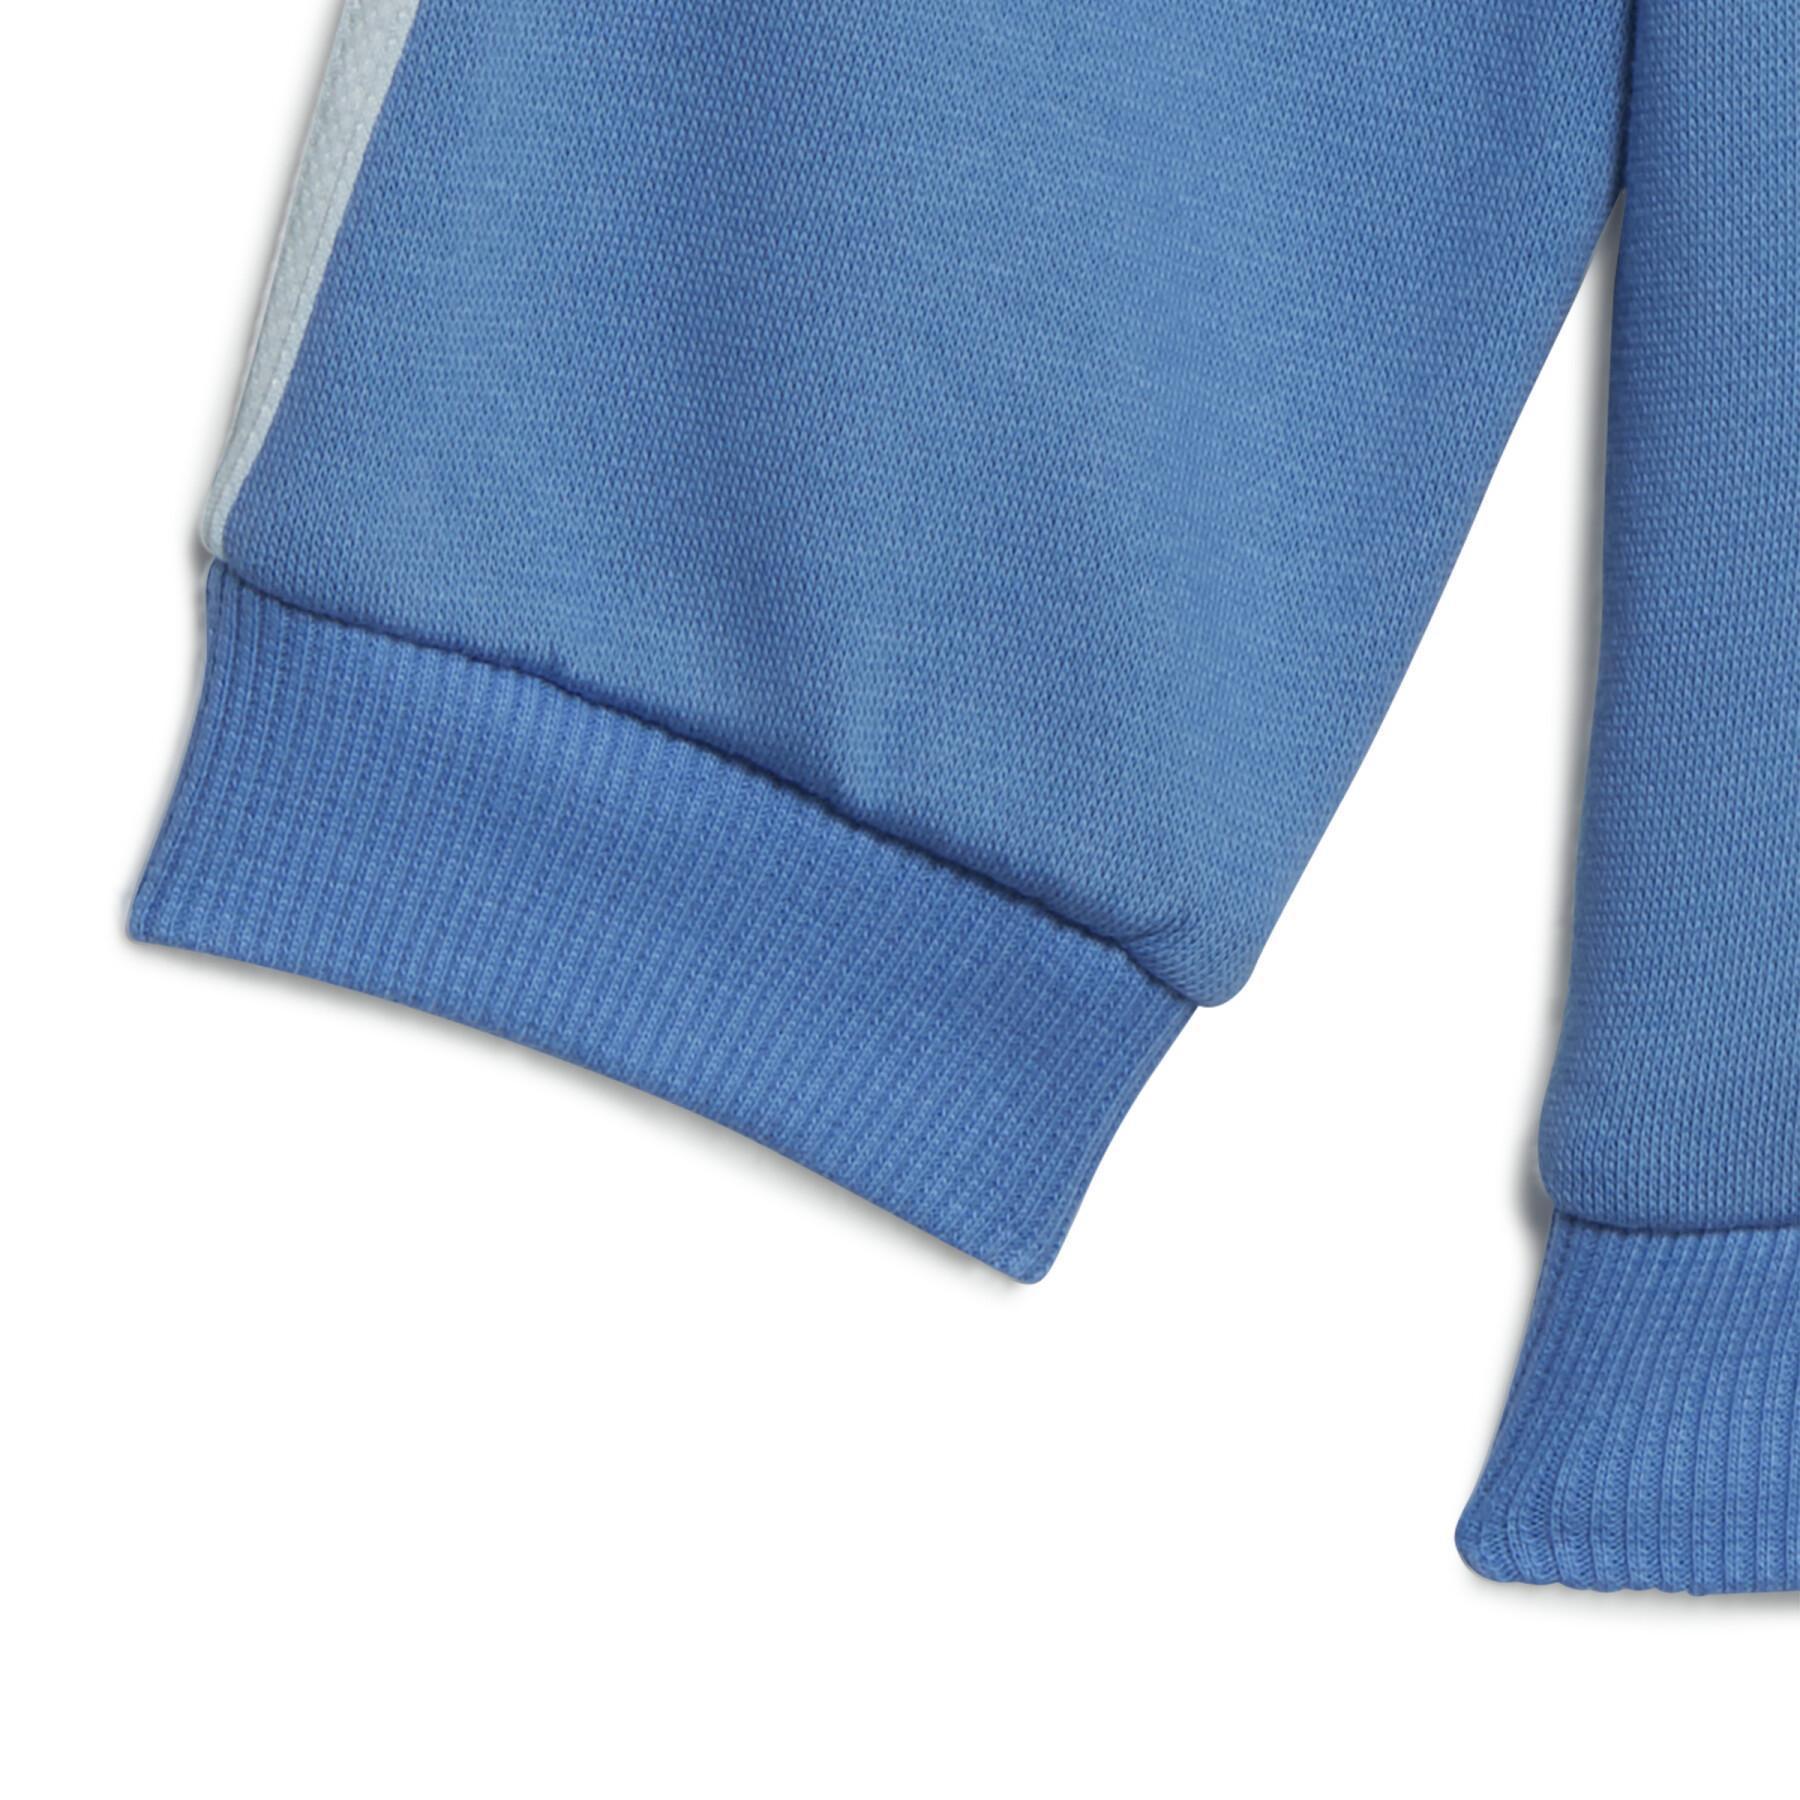 Baby-Trainingsanzug mit Kapuze und Reißverschluss adidas Essentials